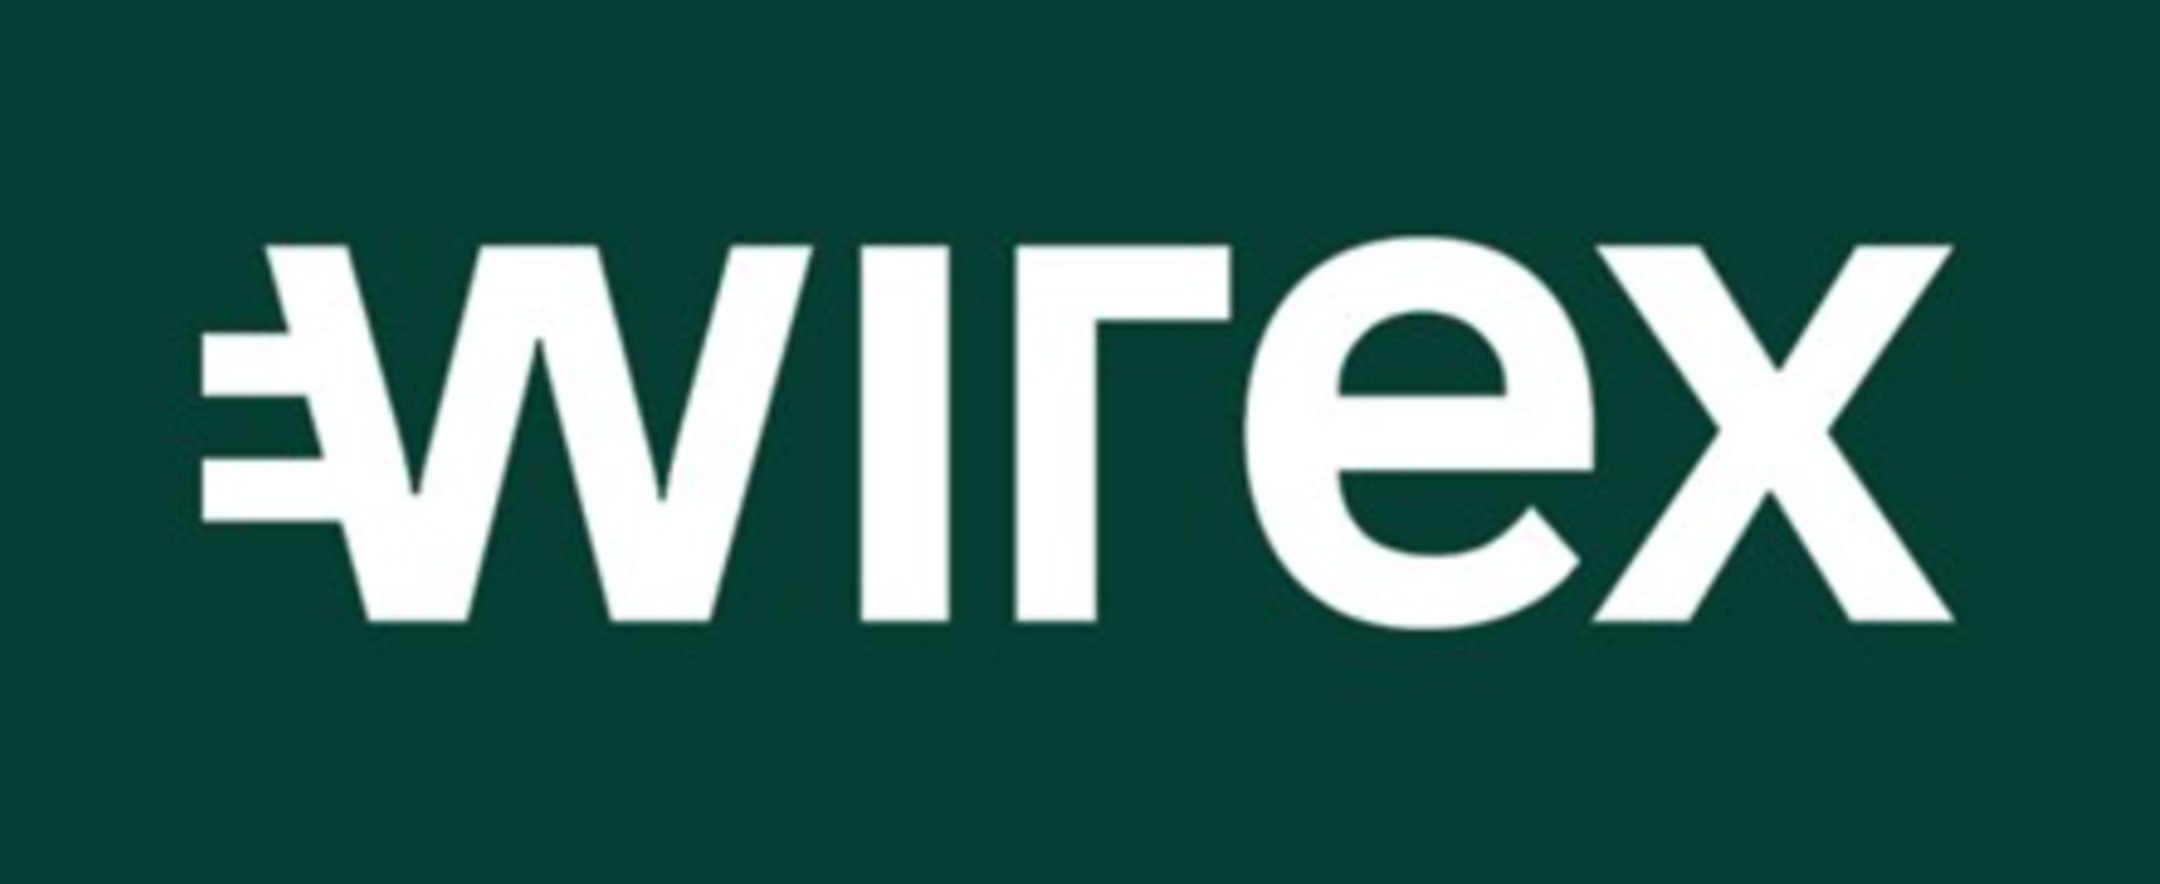 Wirex: la carta che ti permette di guadagnare un cashback in criptovalute fino all